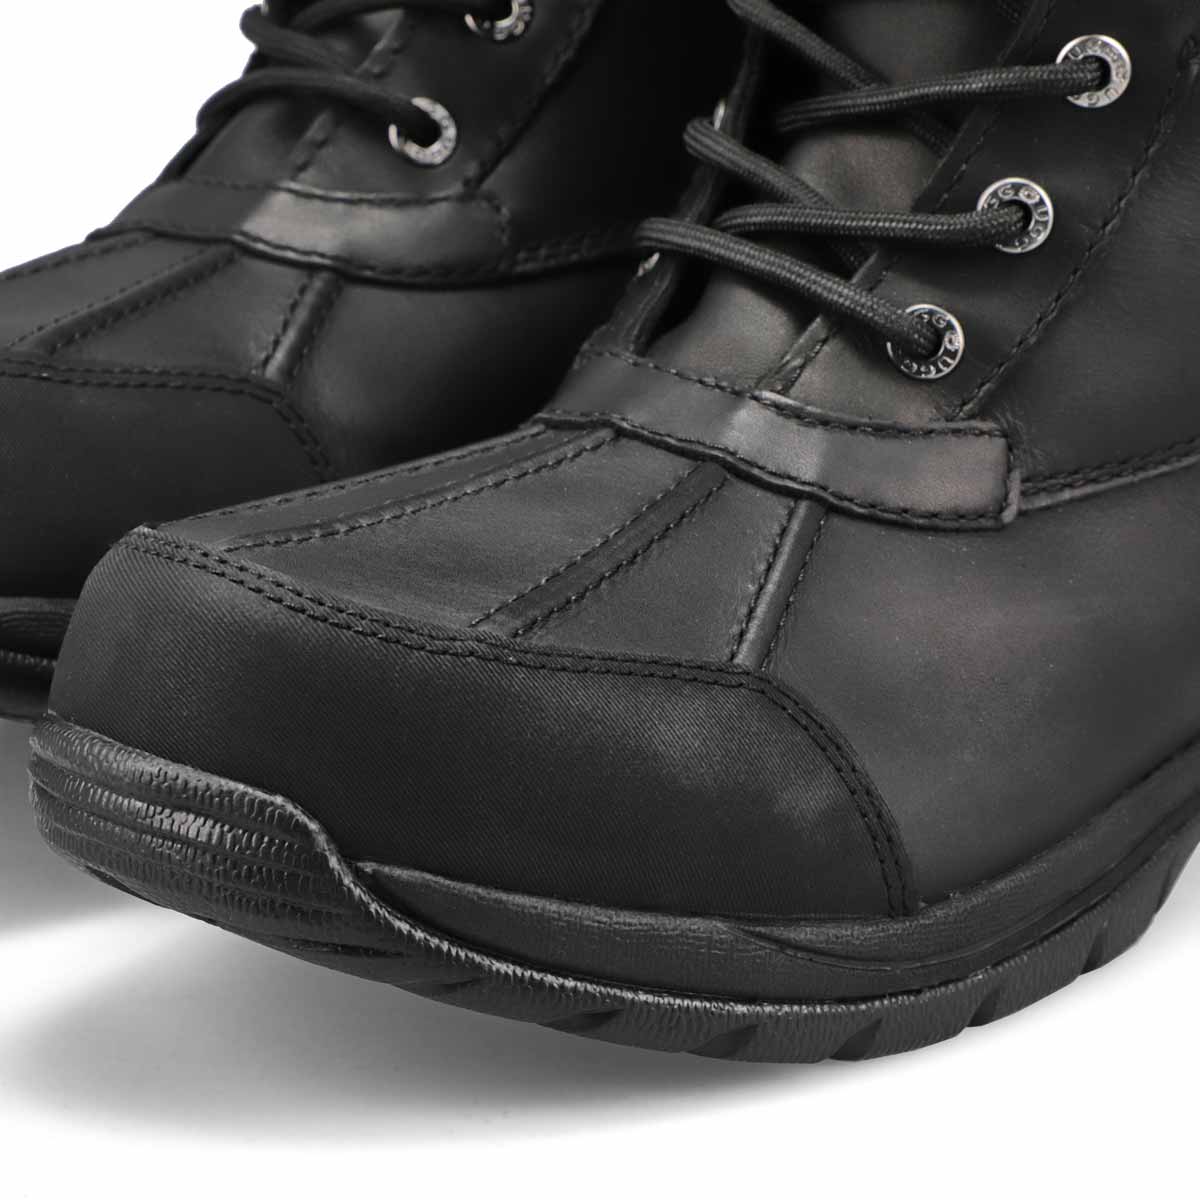 Men's Butte Sheepskin Winter Boot - Black